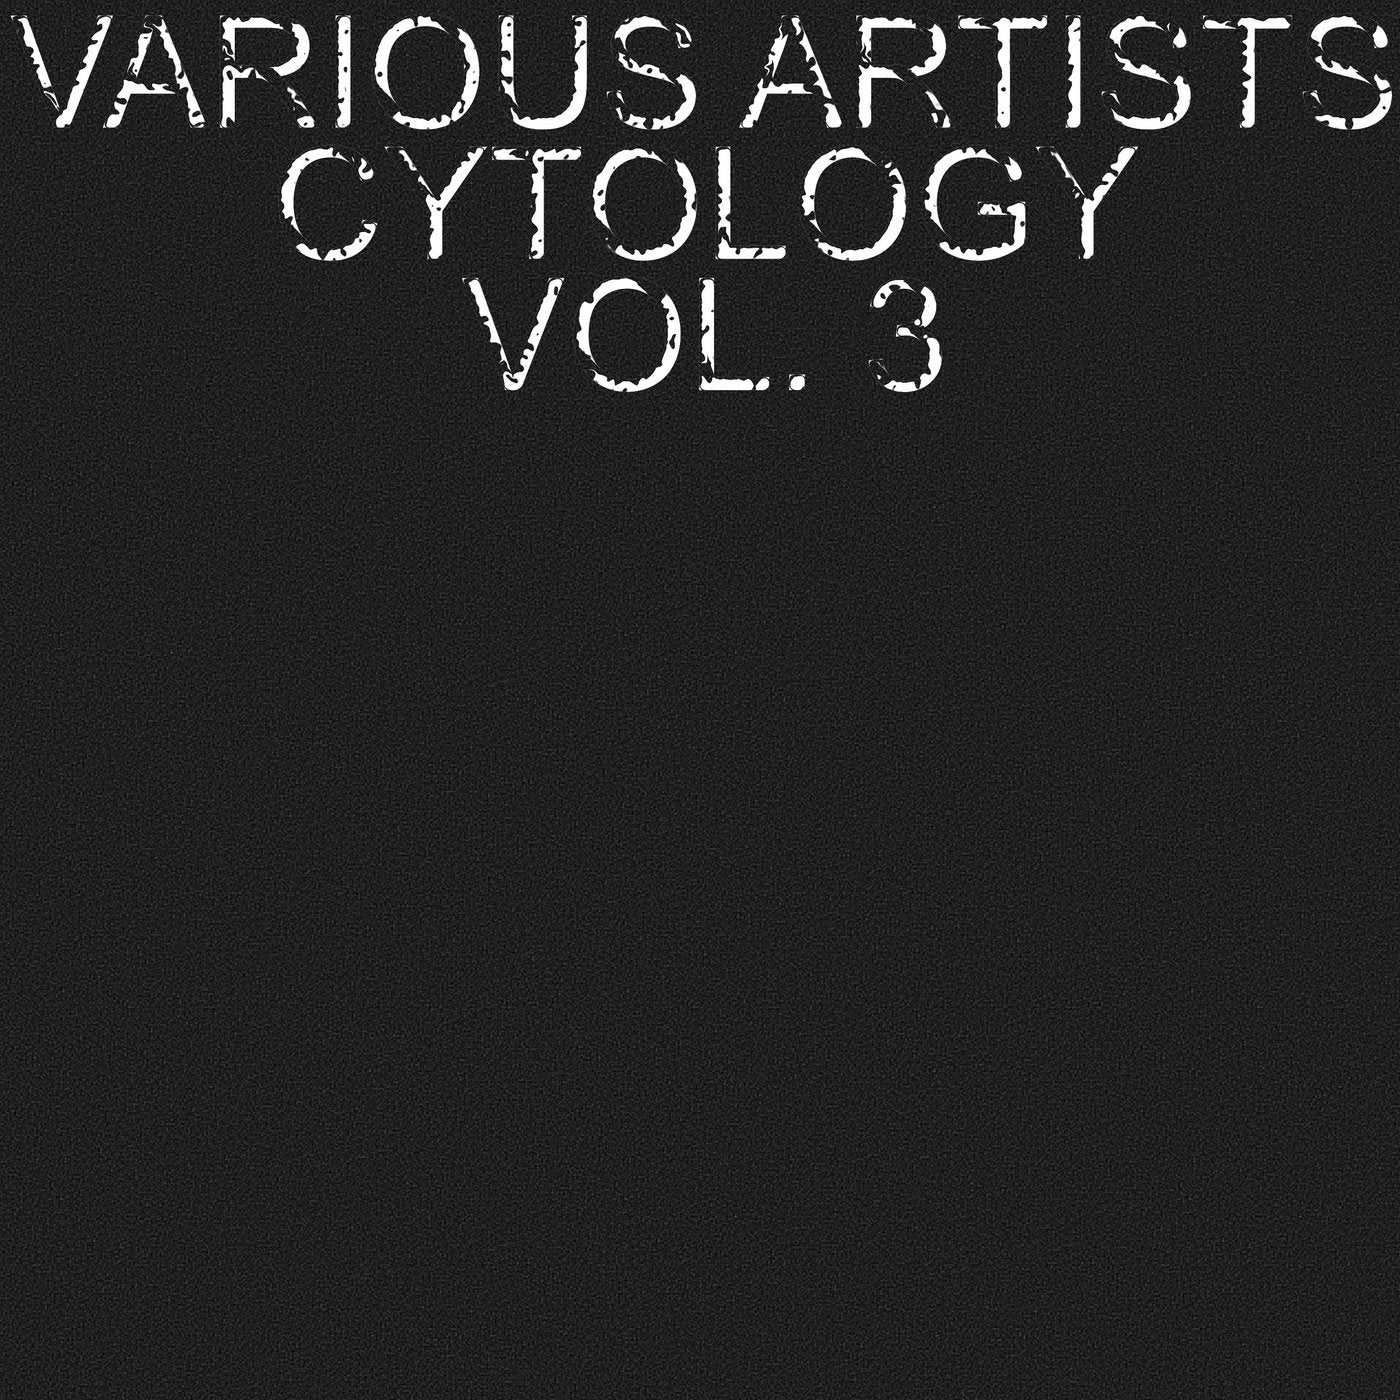 Cytology, Vol. 3